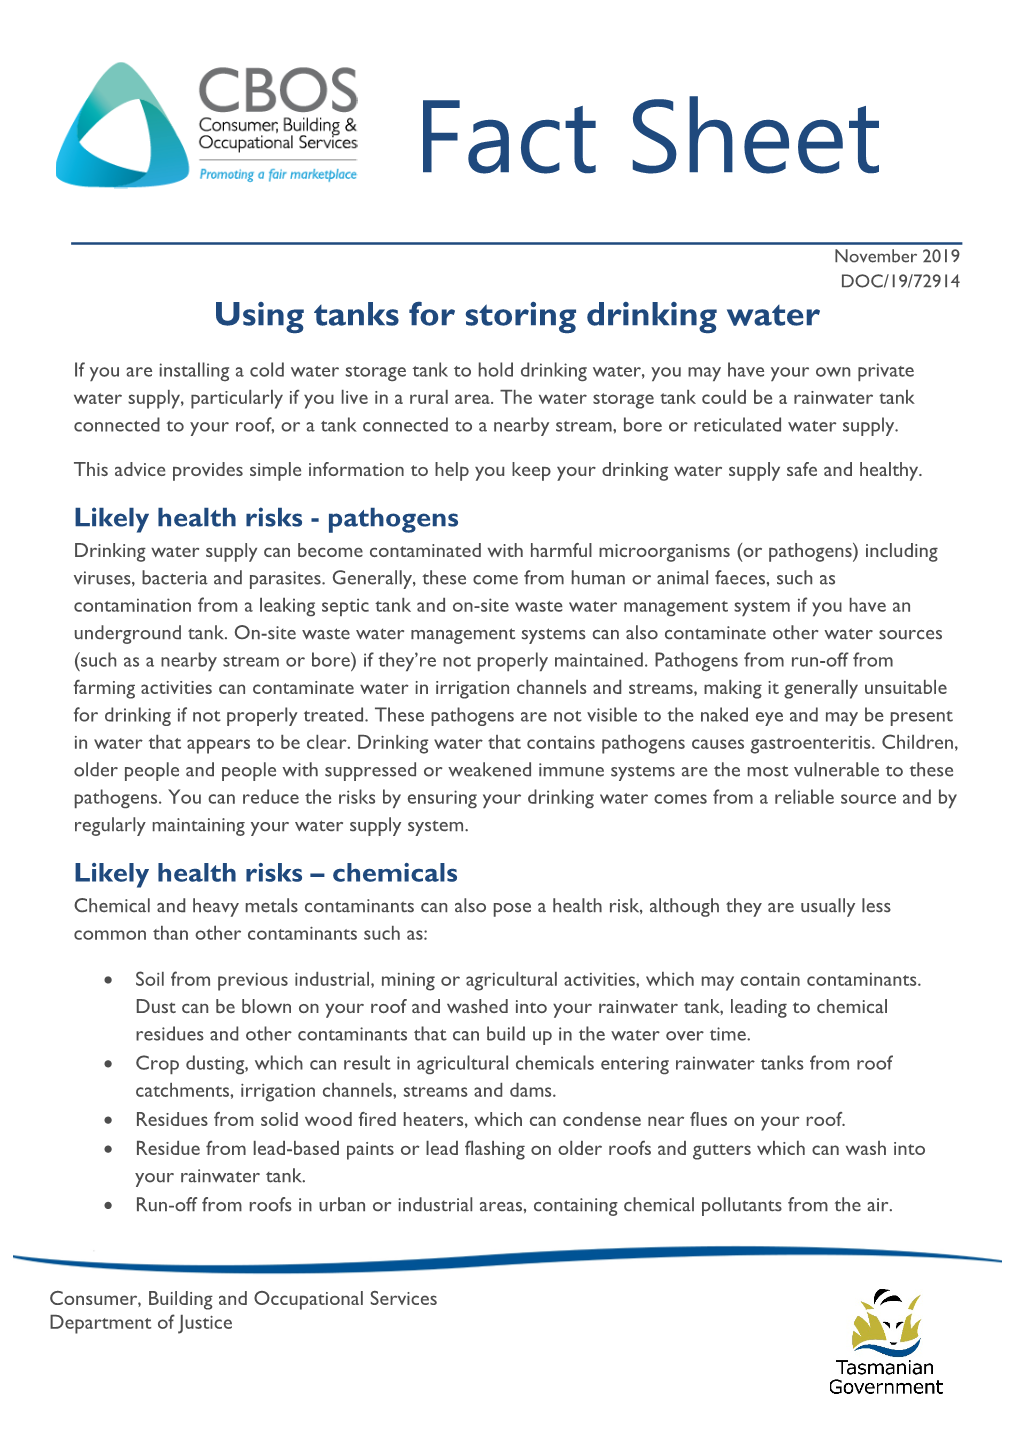 Using Tanks for Storing Drinking Water Fact Sheet